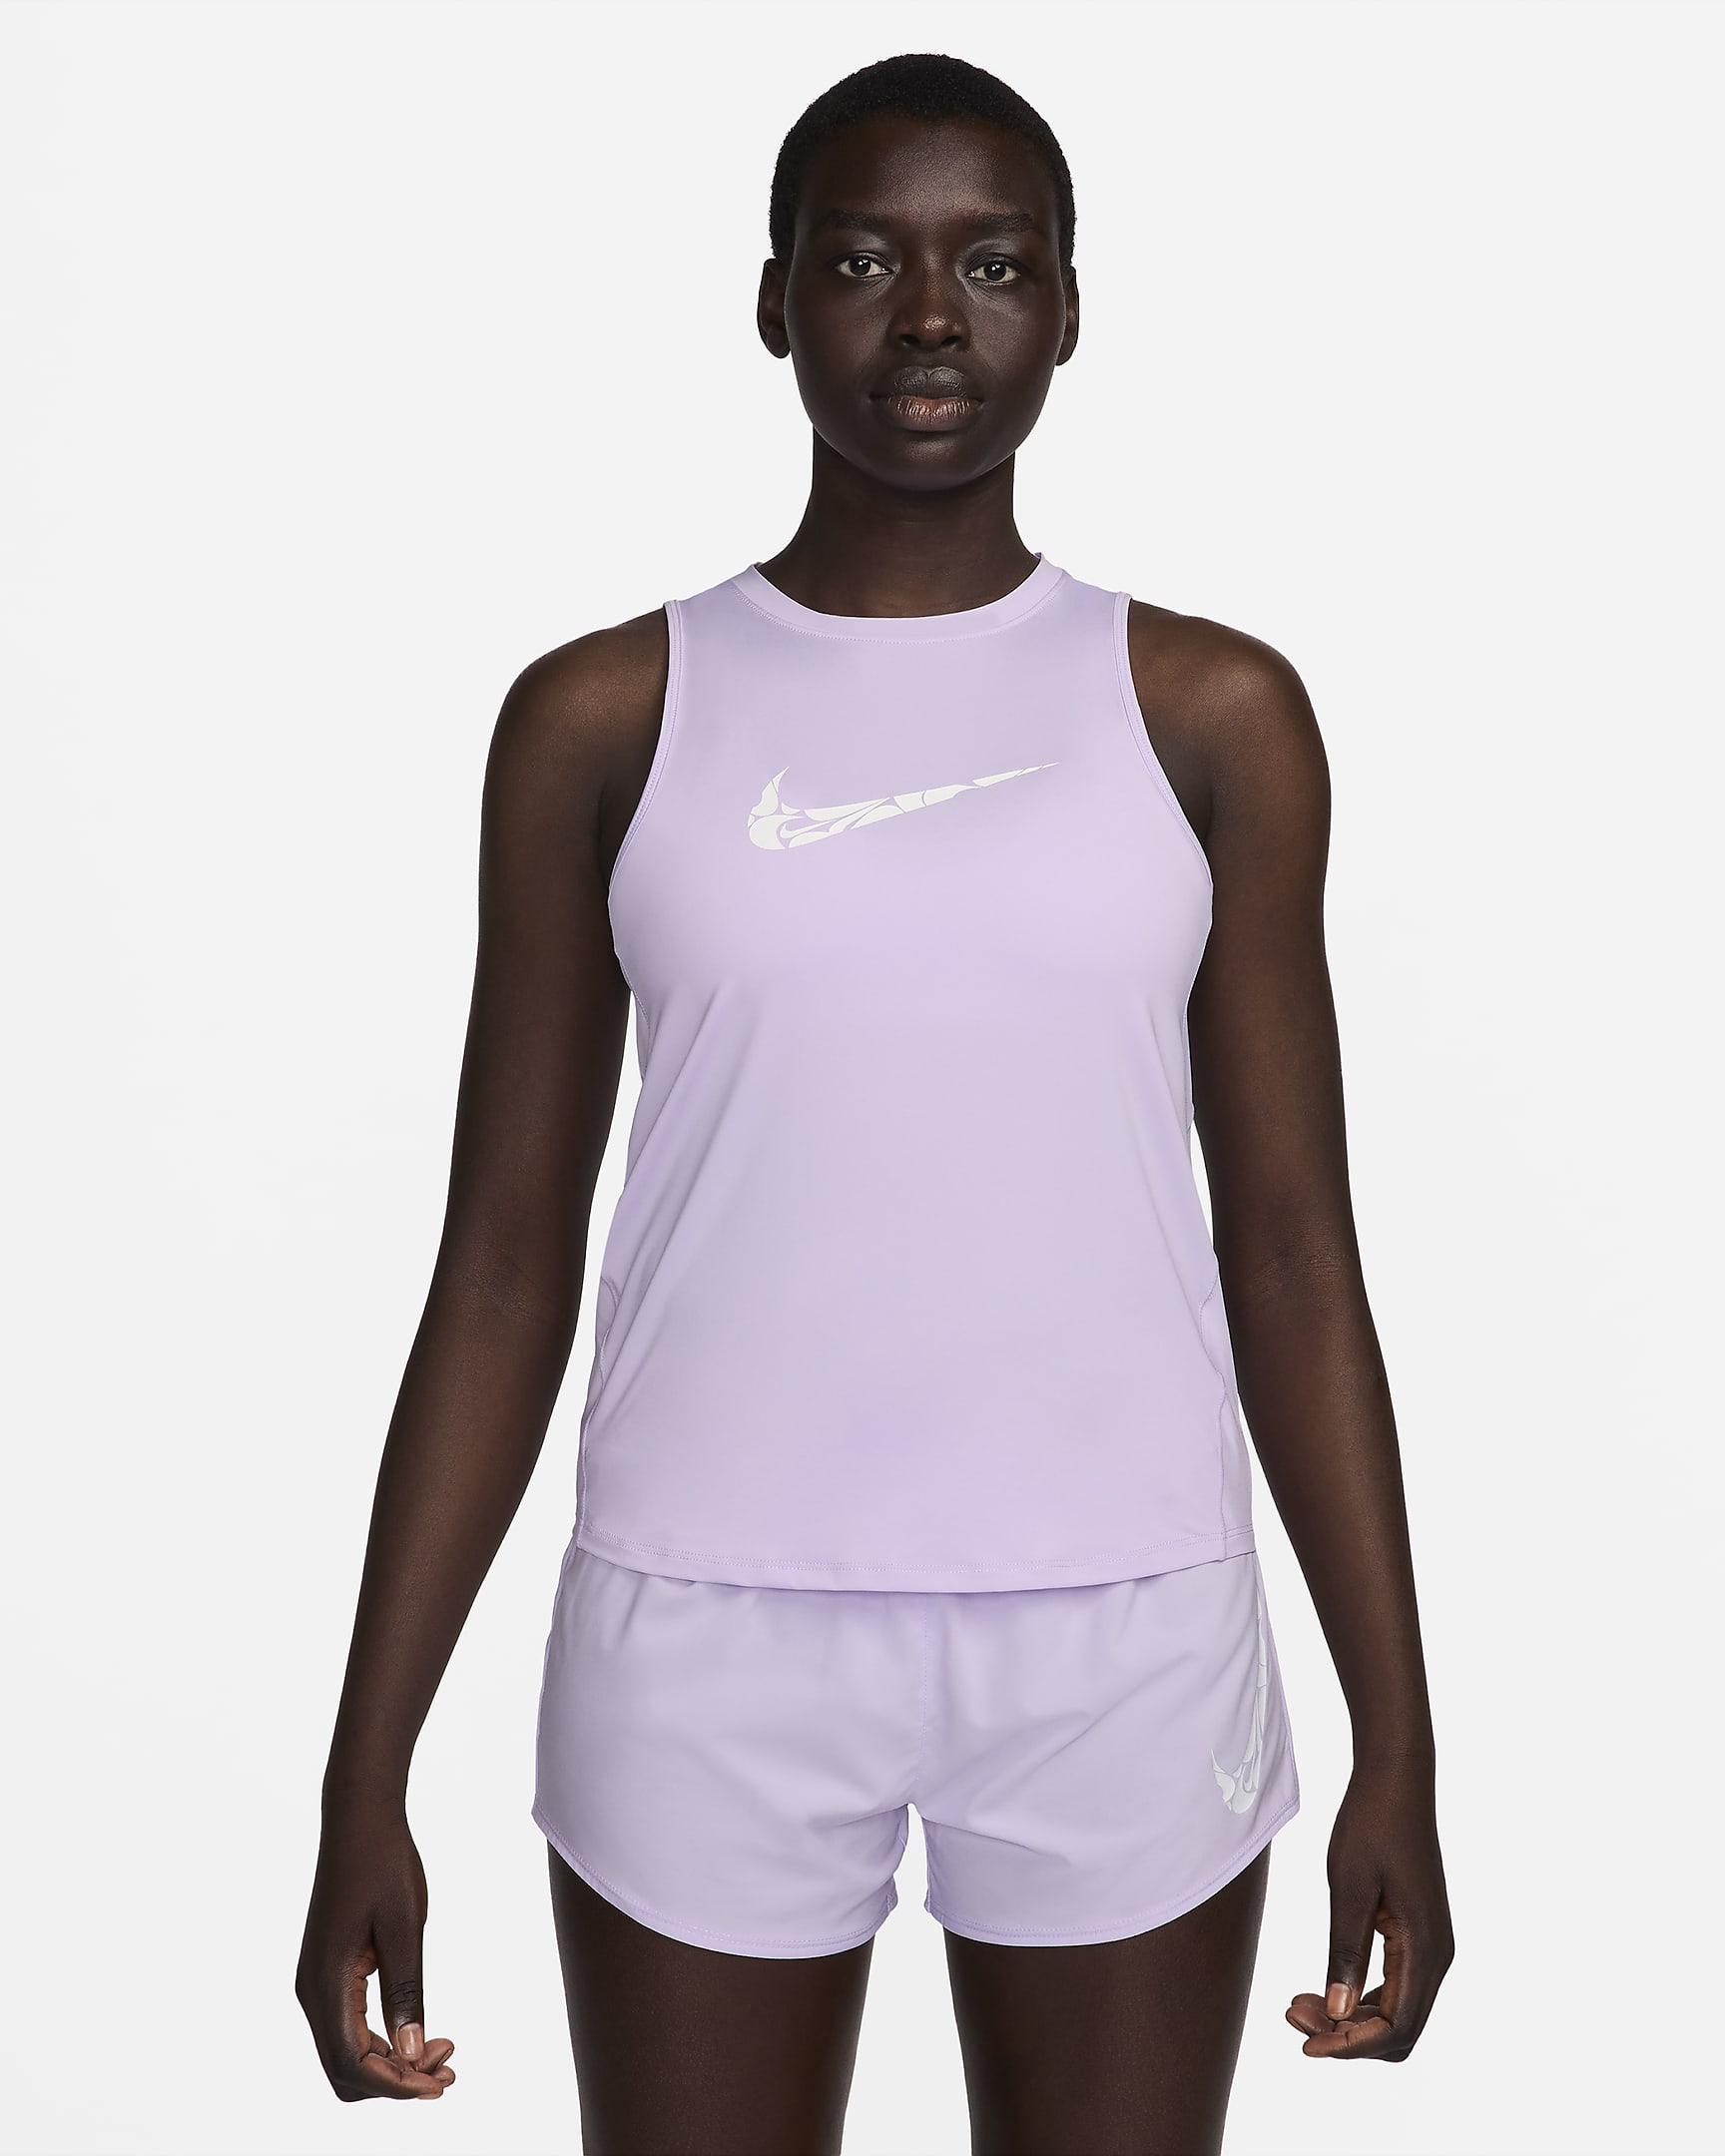 Nike One Women's Graphic Running Tank Top. Nike RO